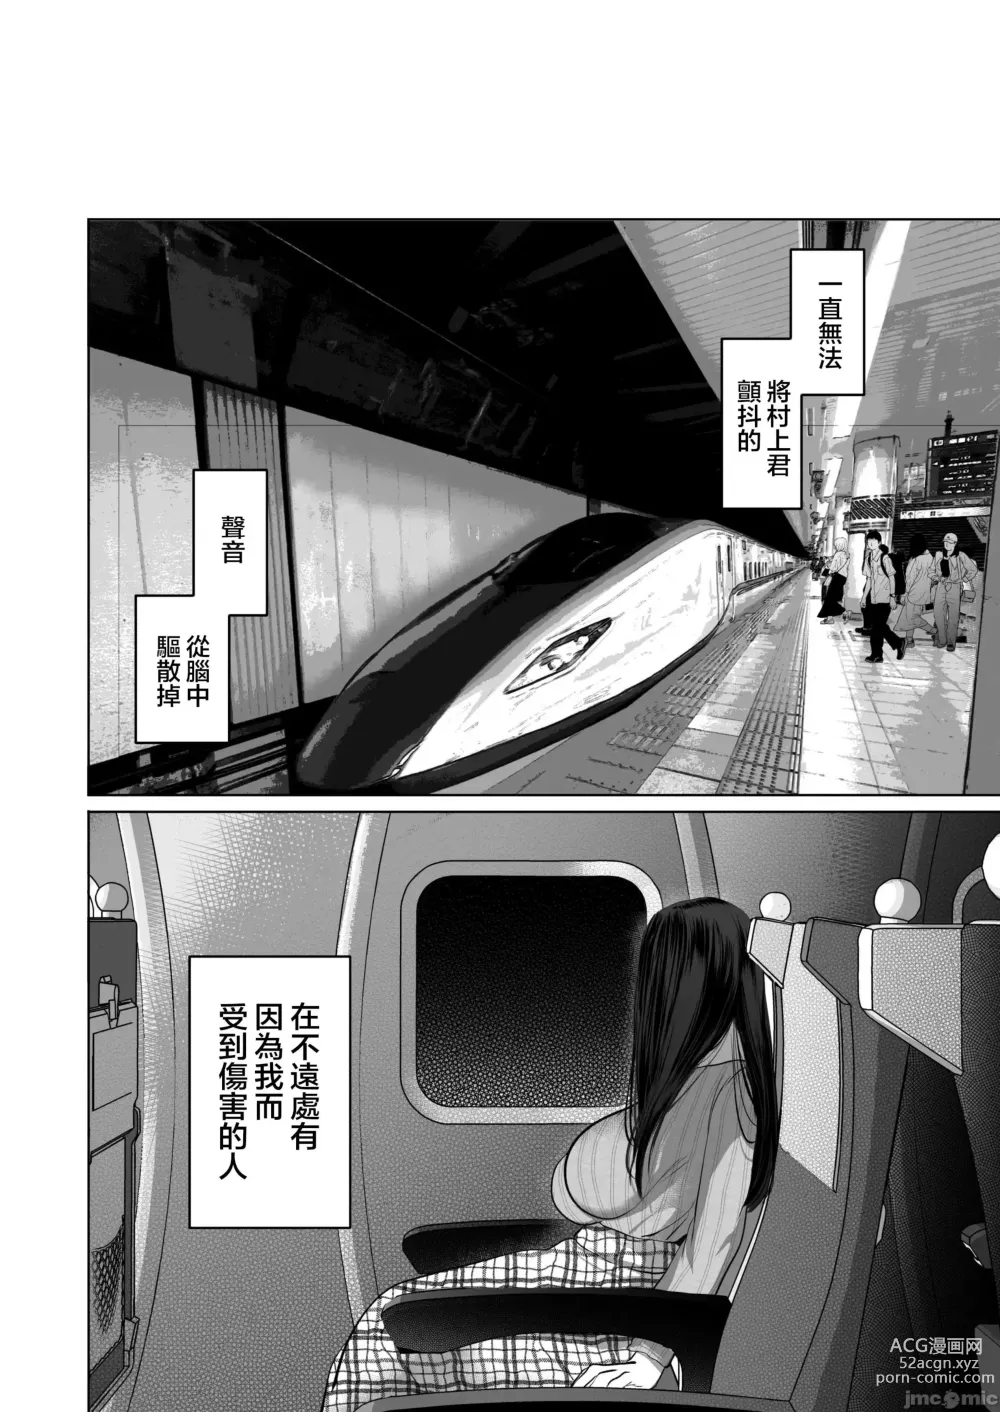 Page 560 of doujinshi Anata ga Nozomu nara 1-5